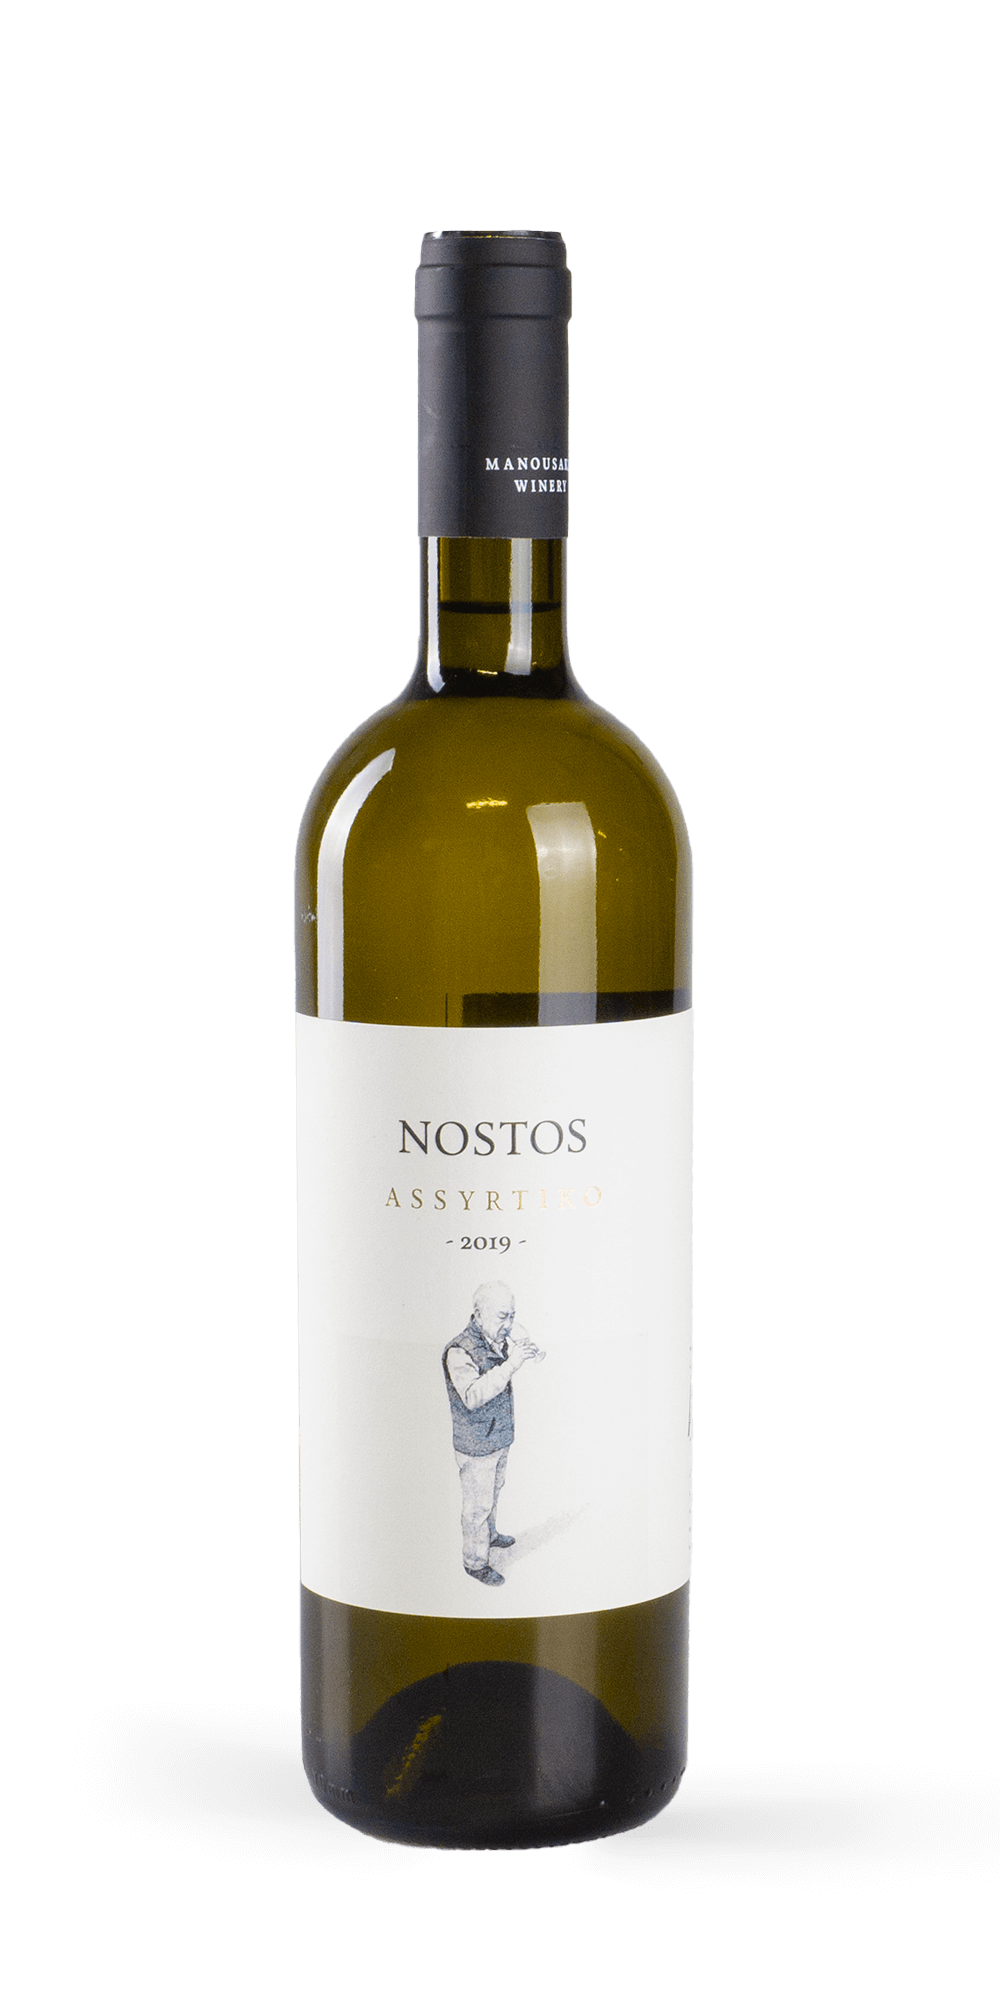 Nostos Assyrtiko  2020 - Manousakis Winery